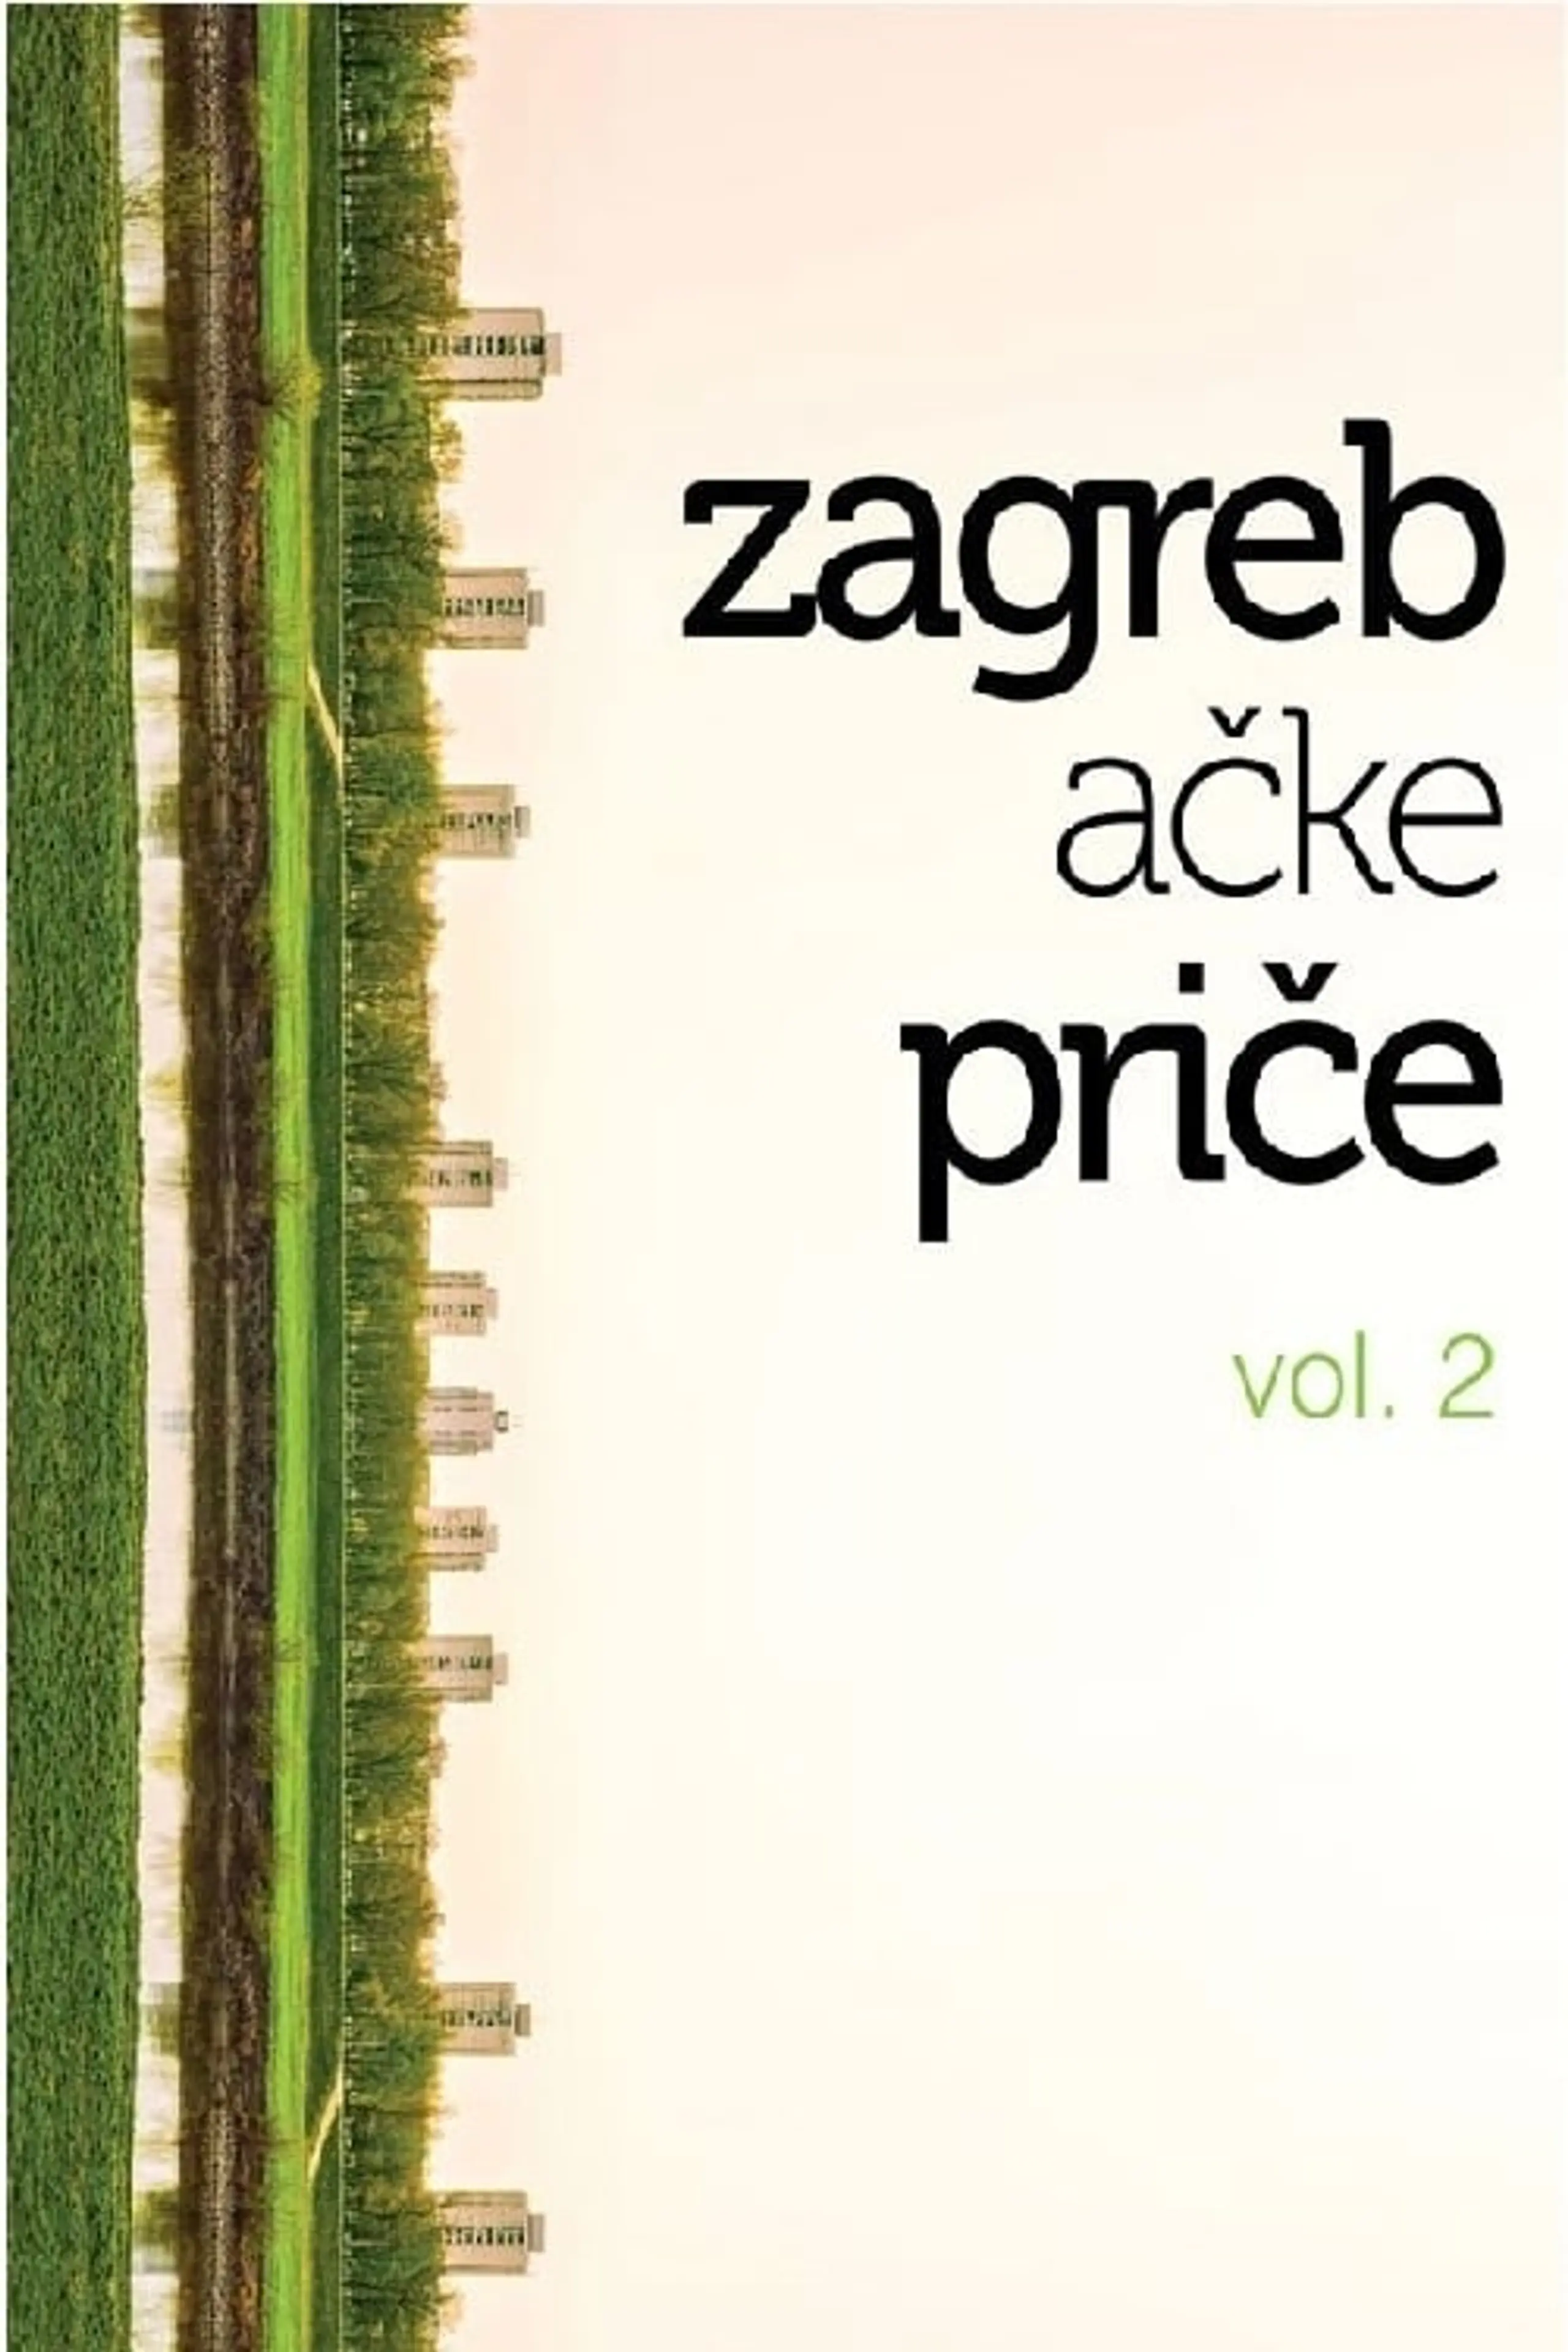 Zagrebačke priče vol. 2